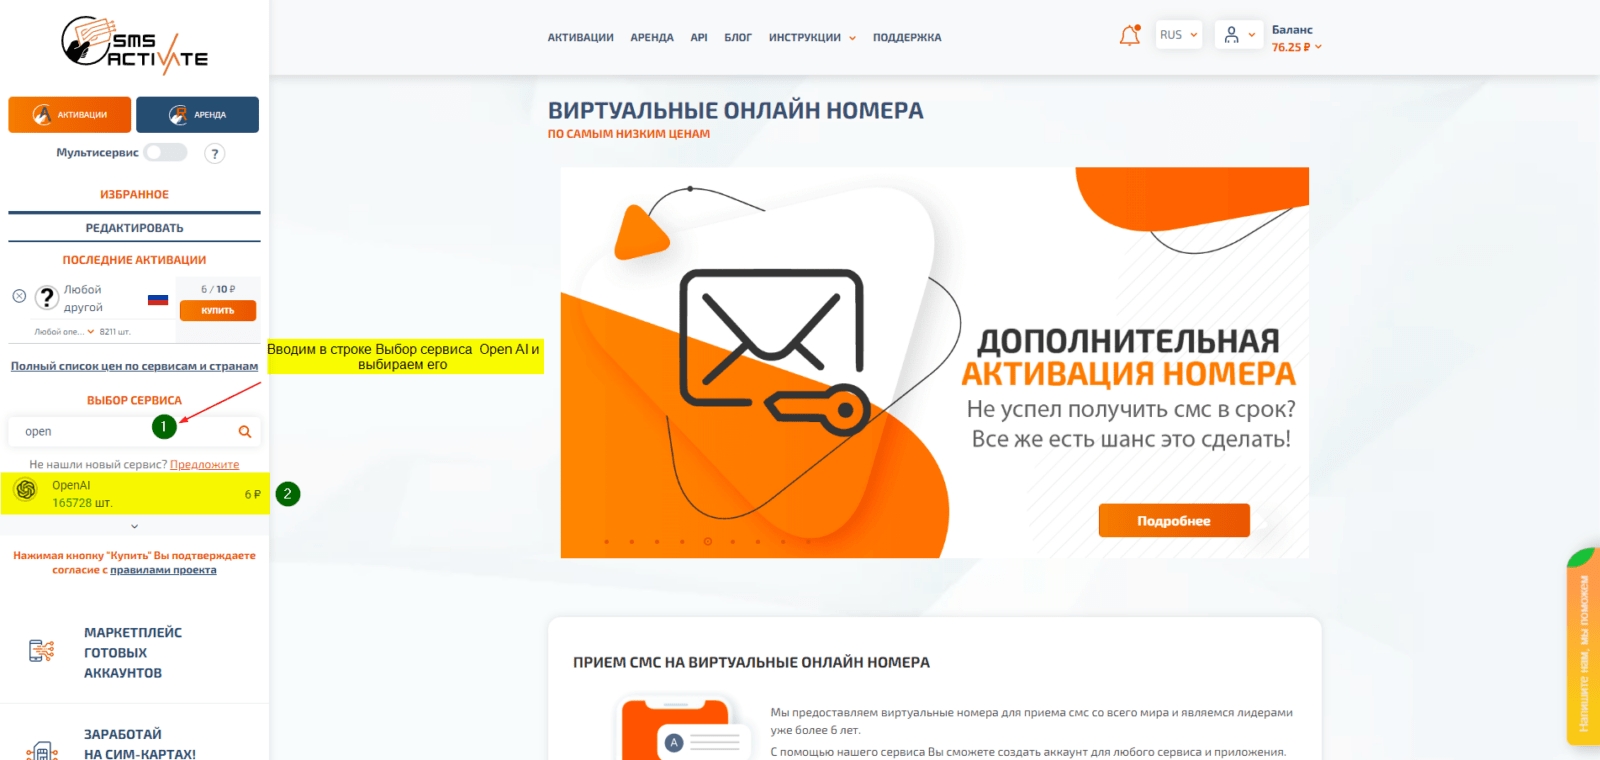 Регистрация в России на сайте openai.com для использования Сhatgpt b Dale-e 2